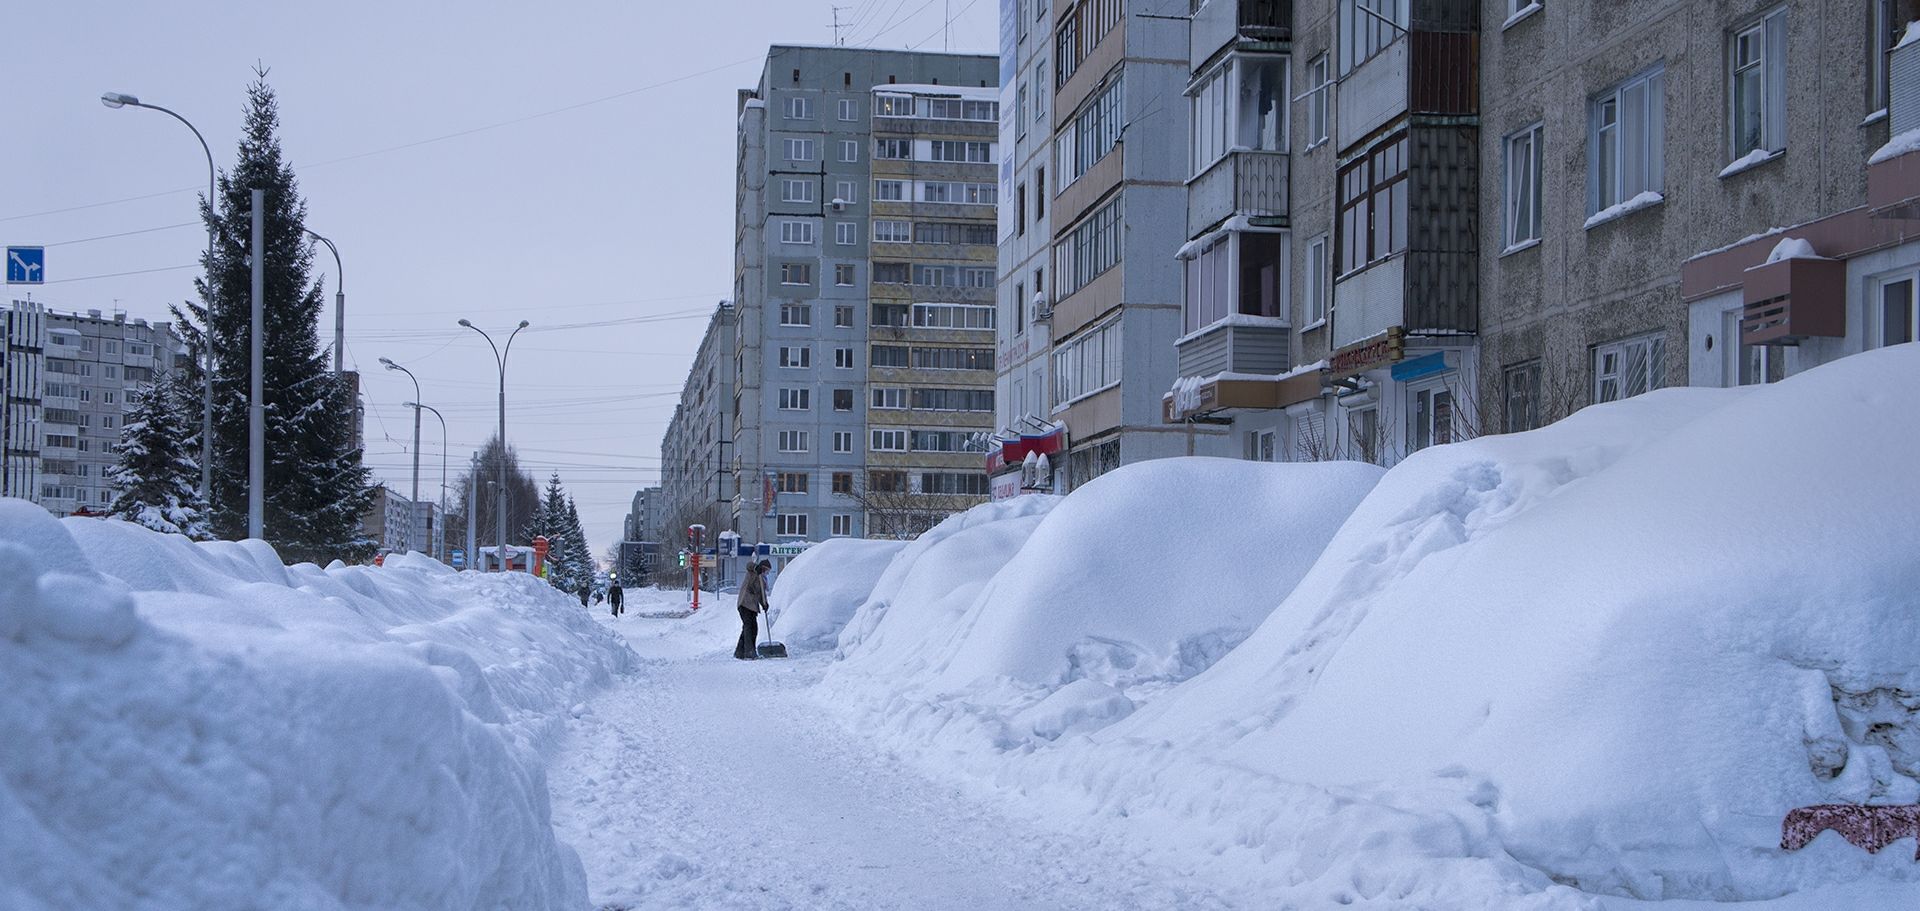 Везде сугробы. Сугробы в Кемерово. Сугробы в городе. Сугробы в Сибири. Много снега в городе.